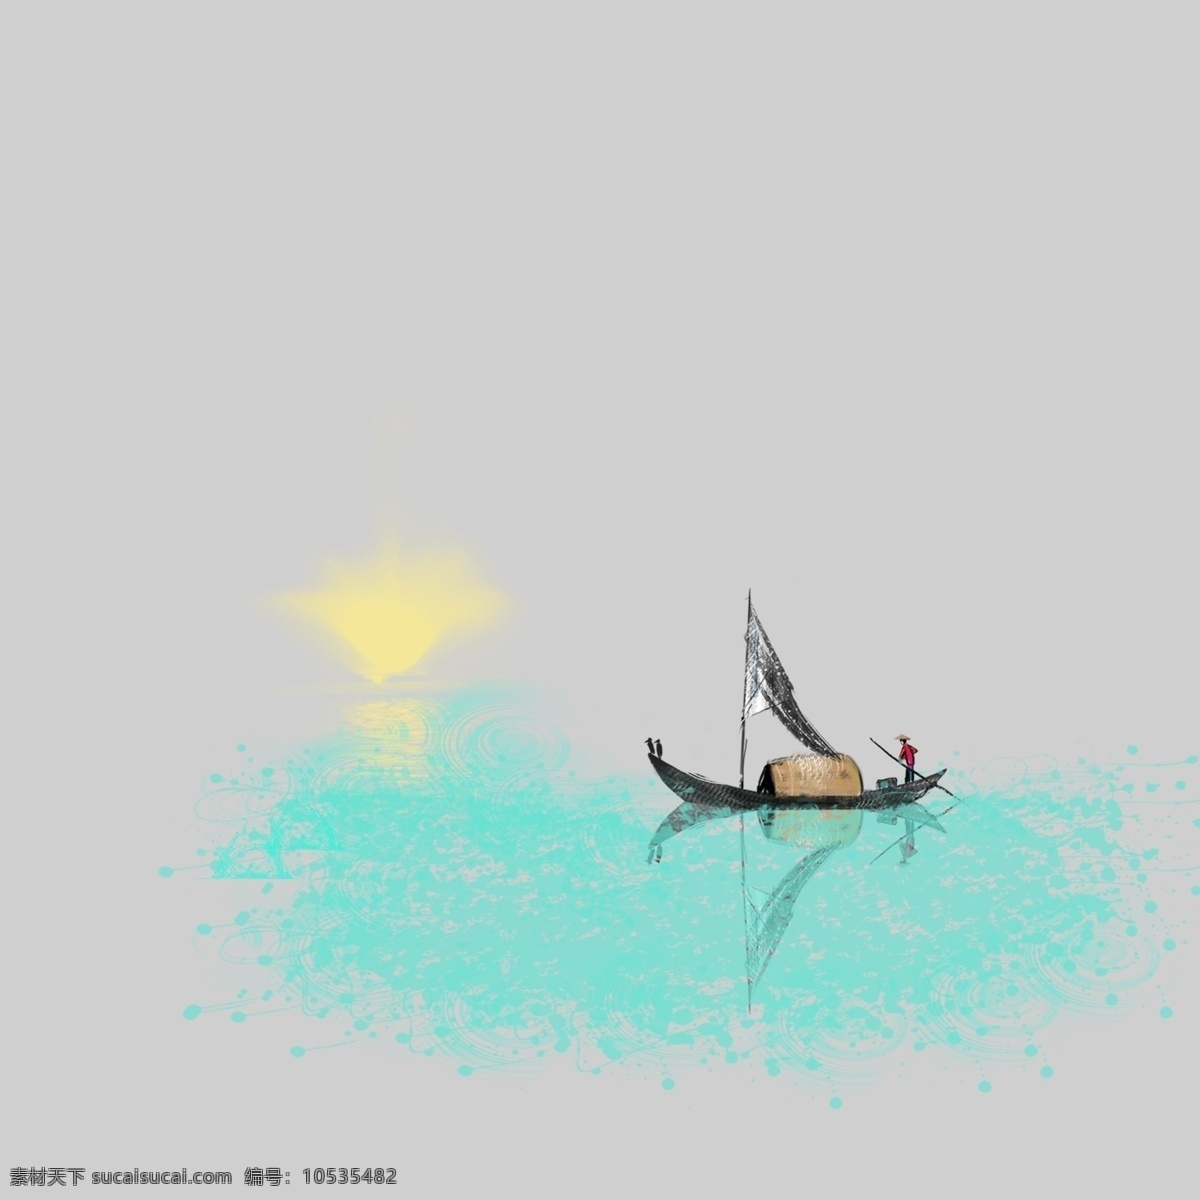 夕阳 海上 渔民 捕鱼 大海 蓝色大海 船 手绘大图下载 渔夫捕鱼 300像素 装饰下载